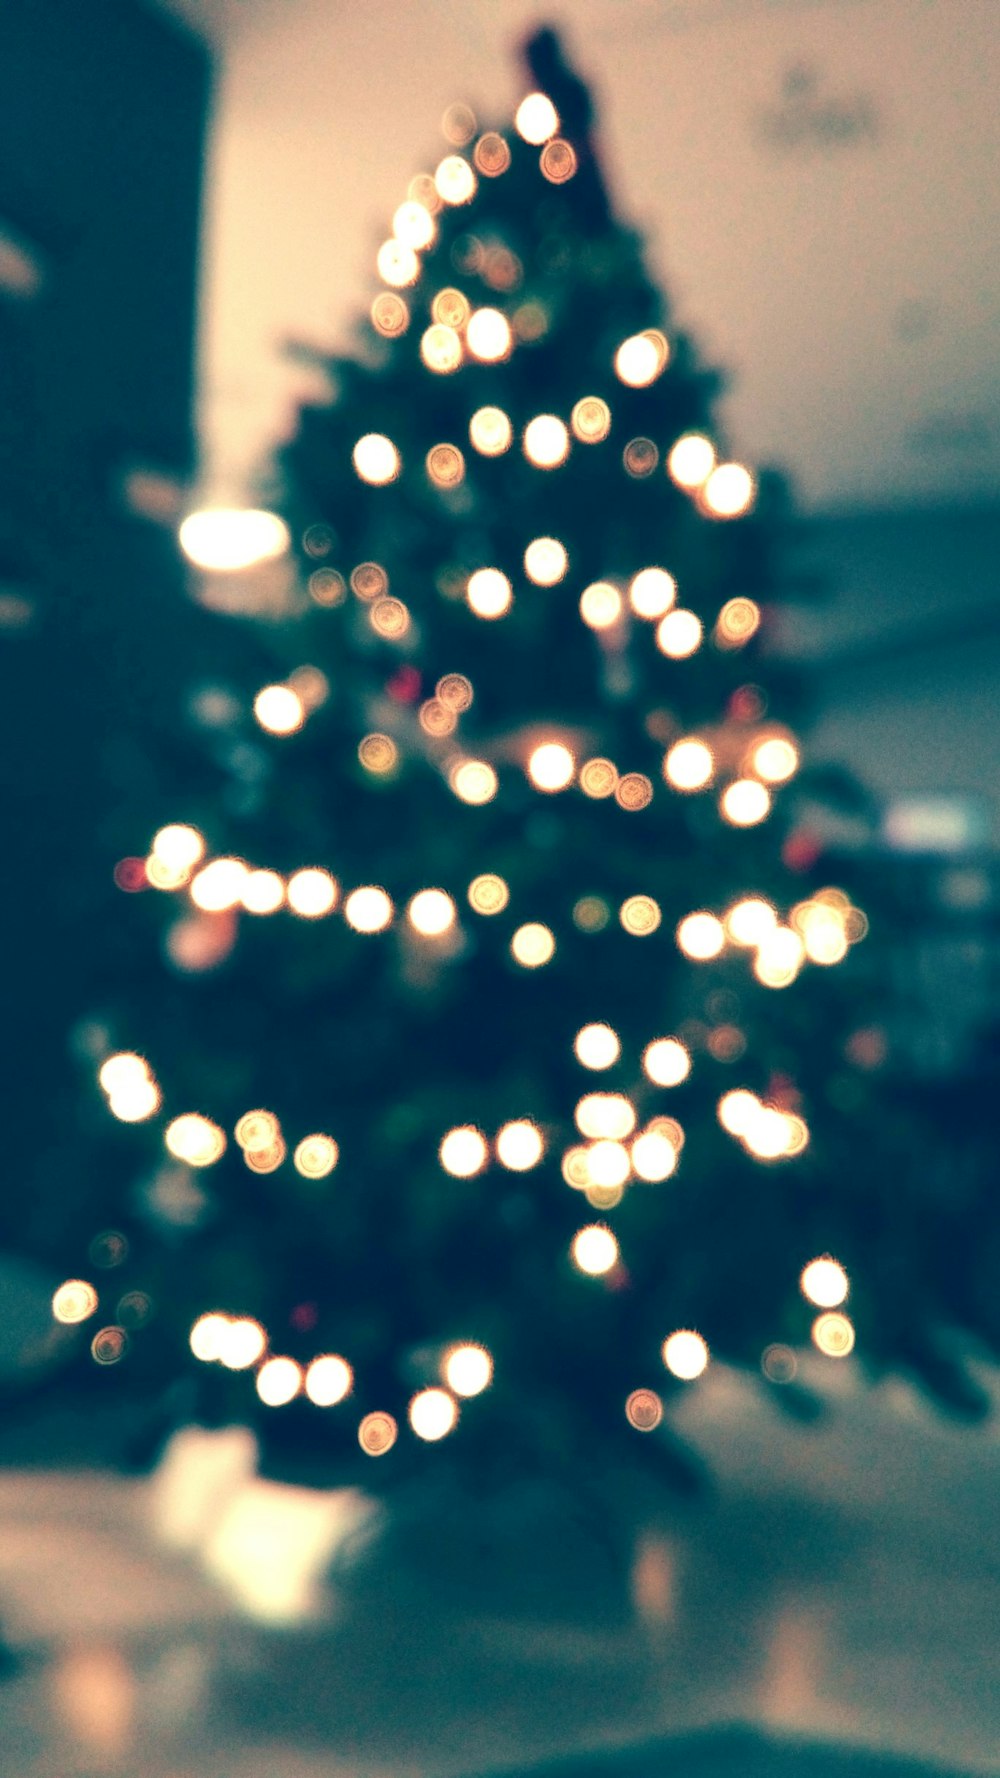 Árbol de Navidad con guirnaldas de luces encendidas